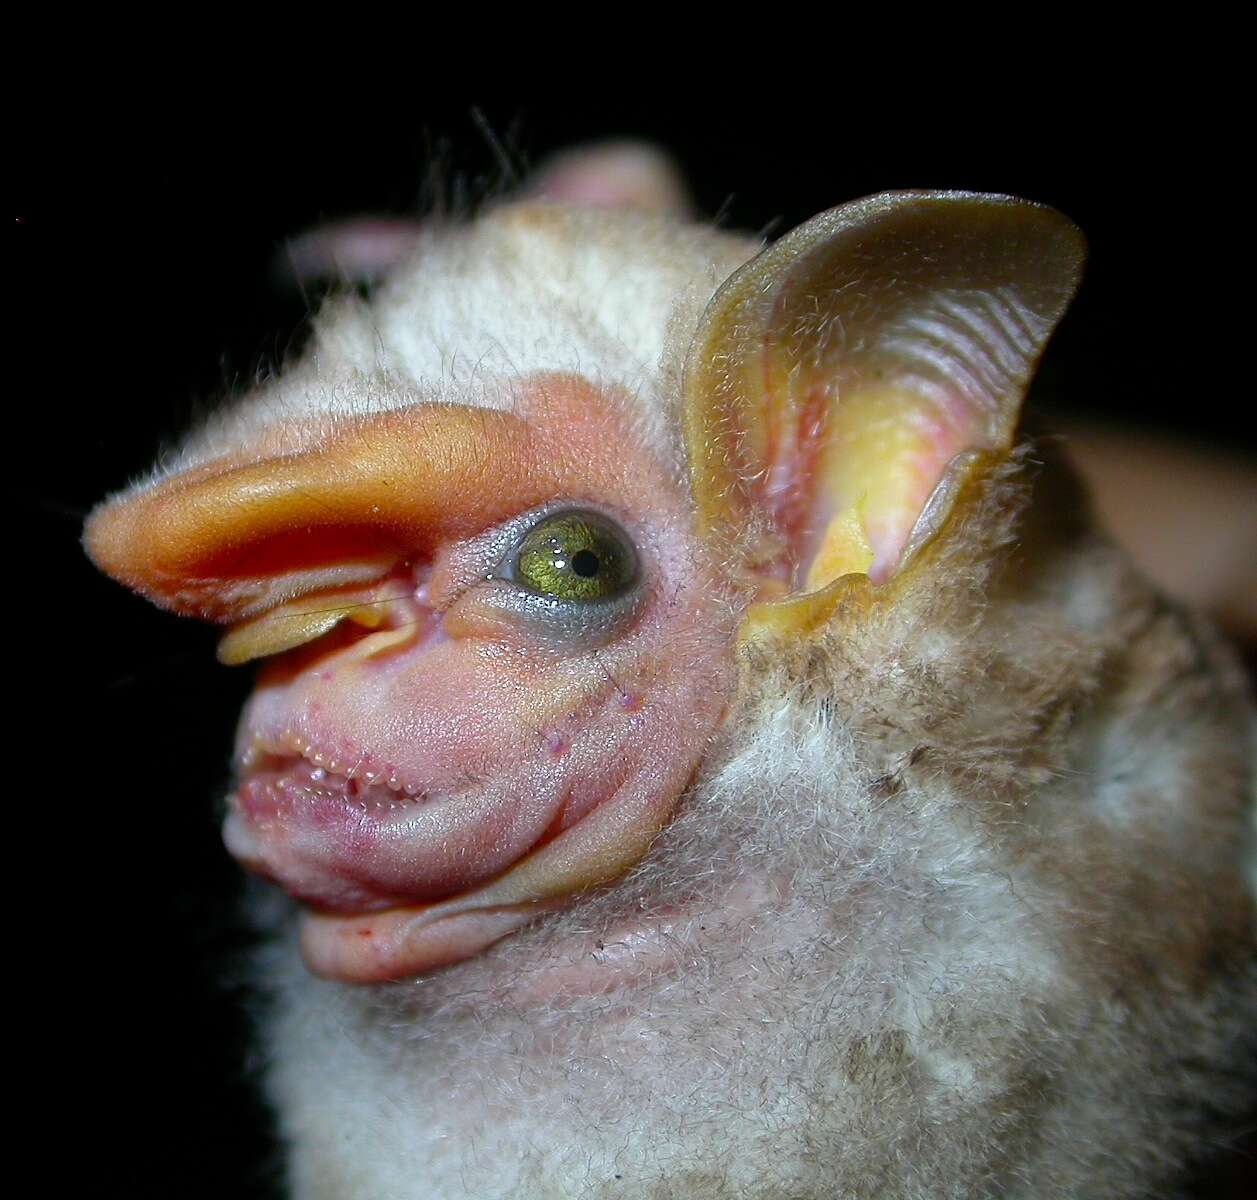 Image of Visored Bat